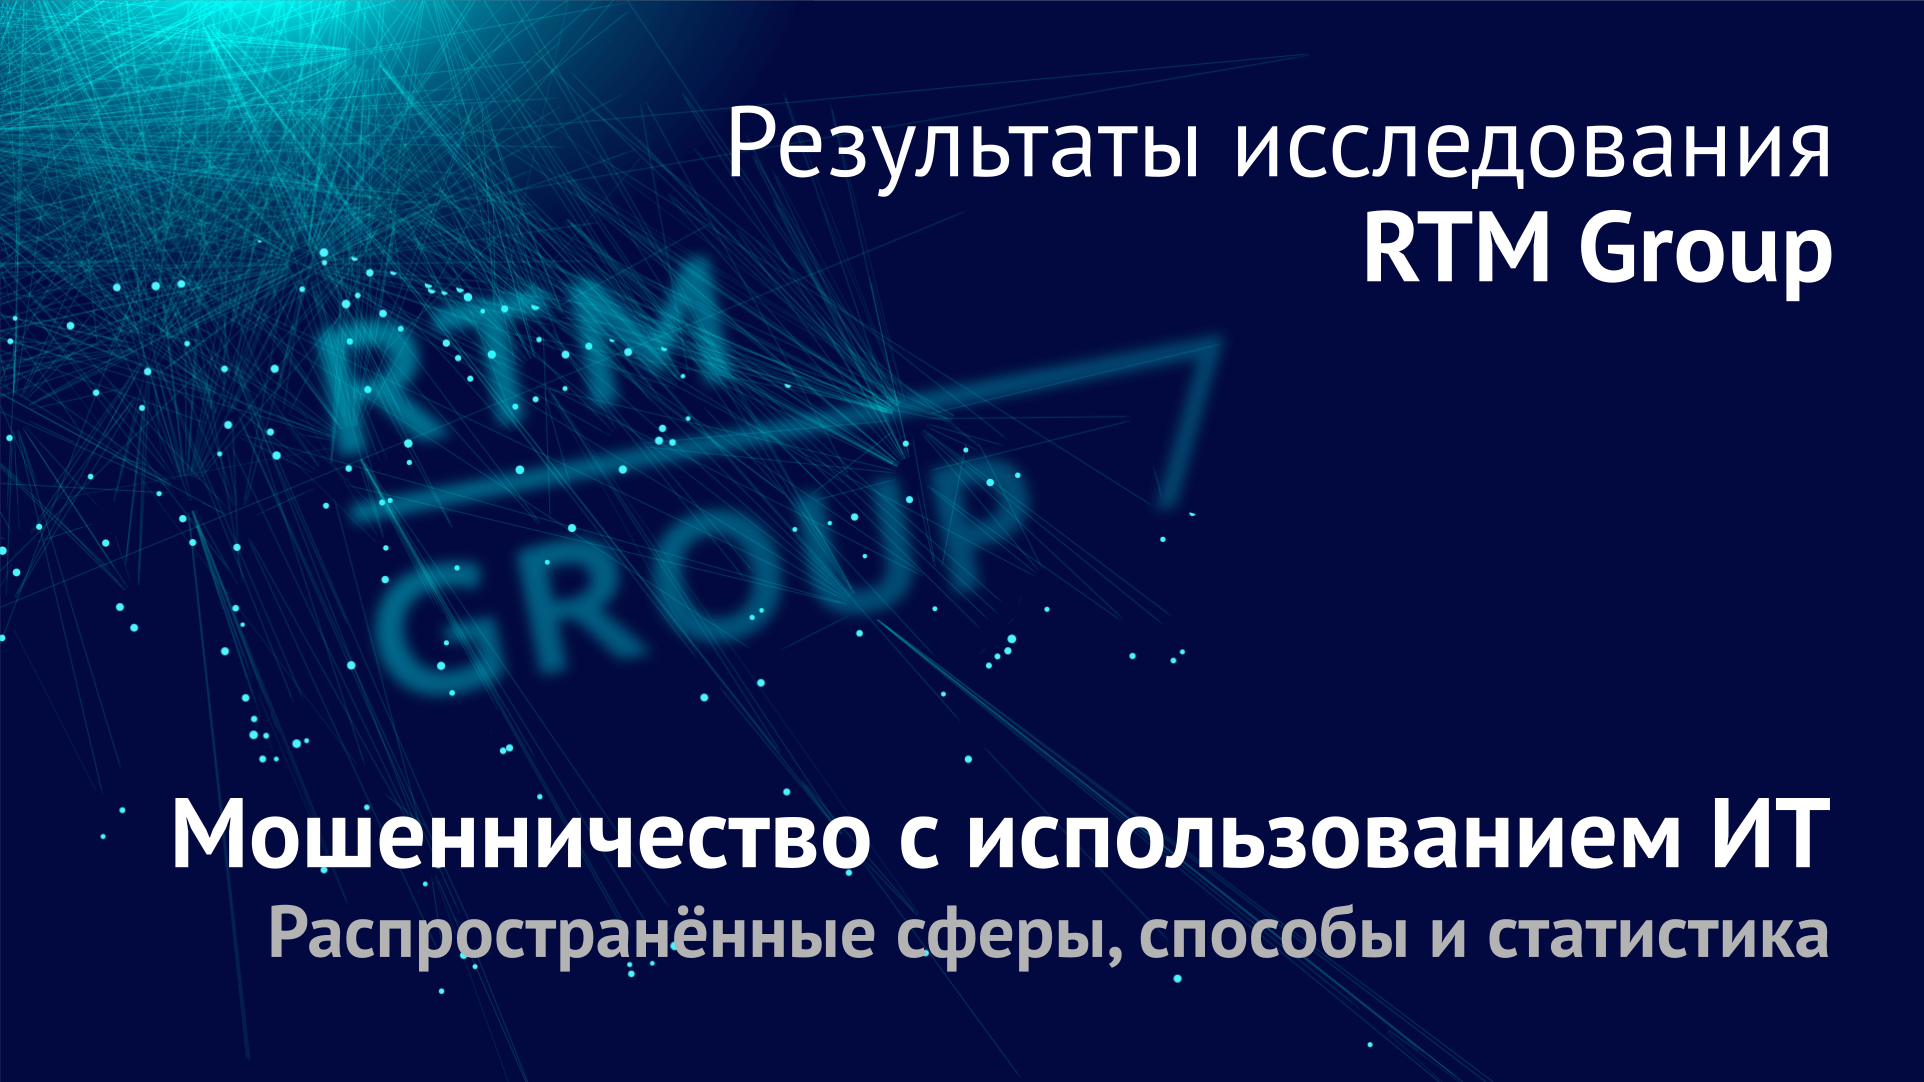 RTM Group представляет результаты исследования по мошенничествам с использованием ИТ